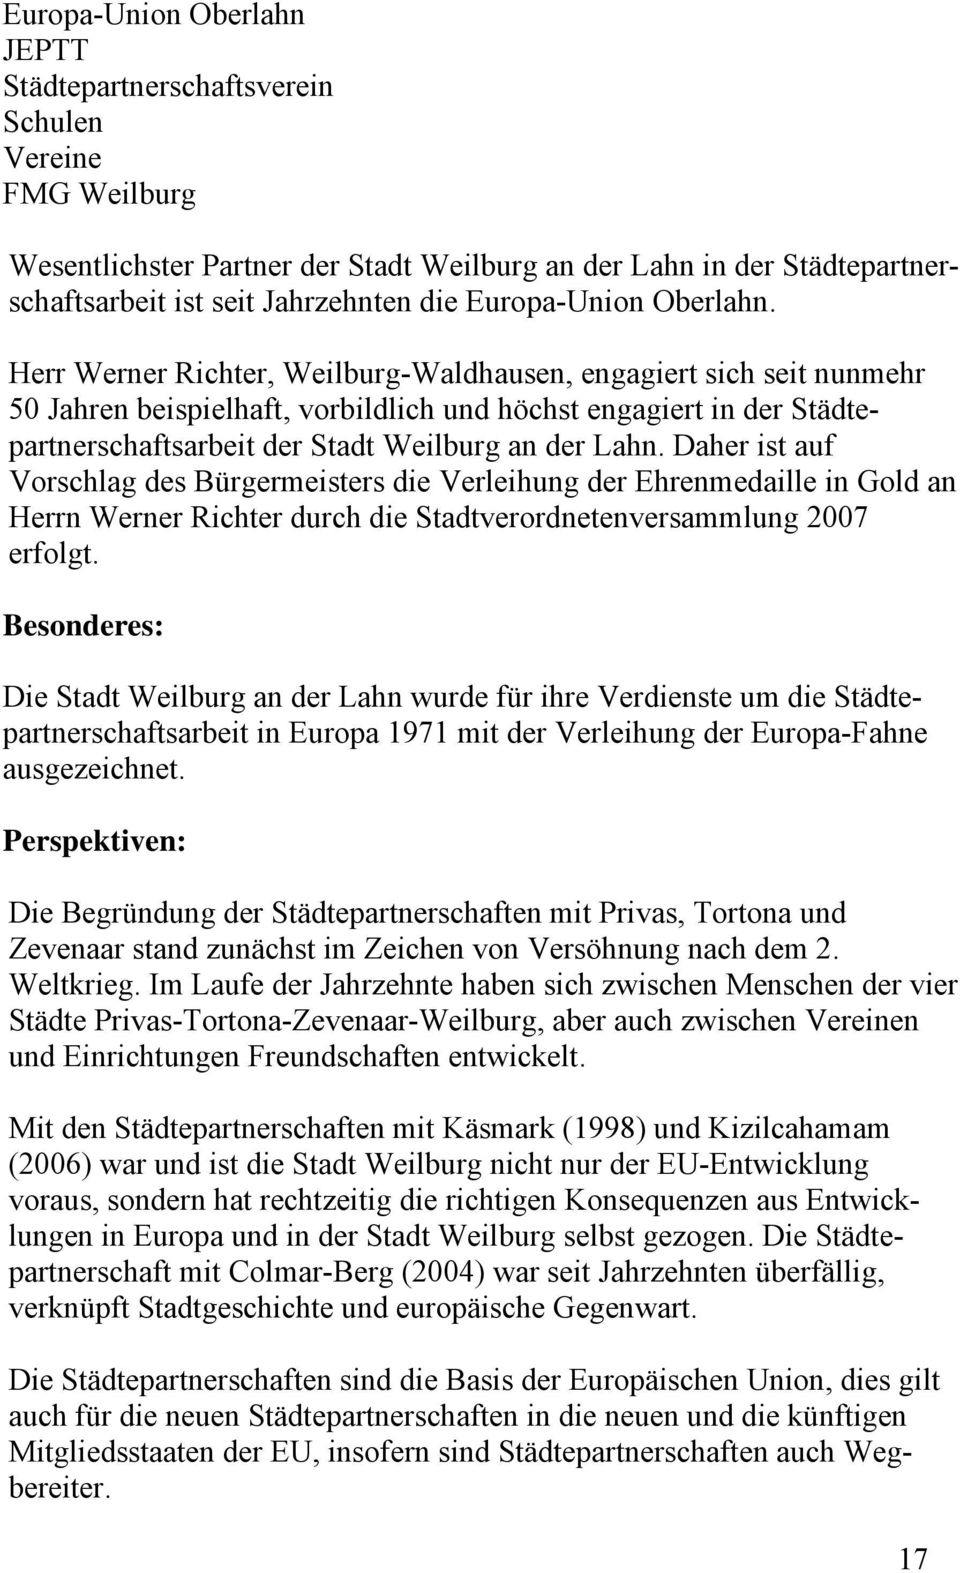 Herr Werner Richter, Weilburg-Waldhausen, engagiert sich seit nunmehr 50 Jahren beispielhaft, vorbildlich und höchst engagiert in der Städtepartnerschaftsarbeit der Stadt Weilburg an der Lahn.